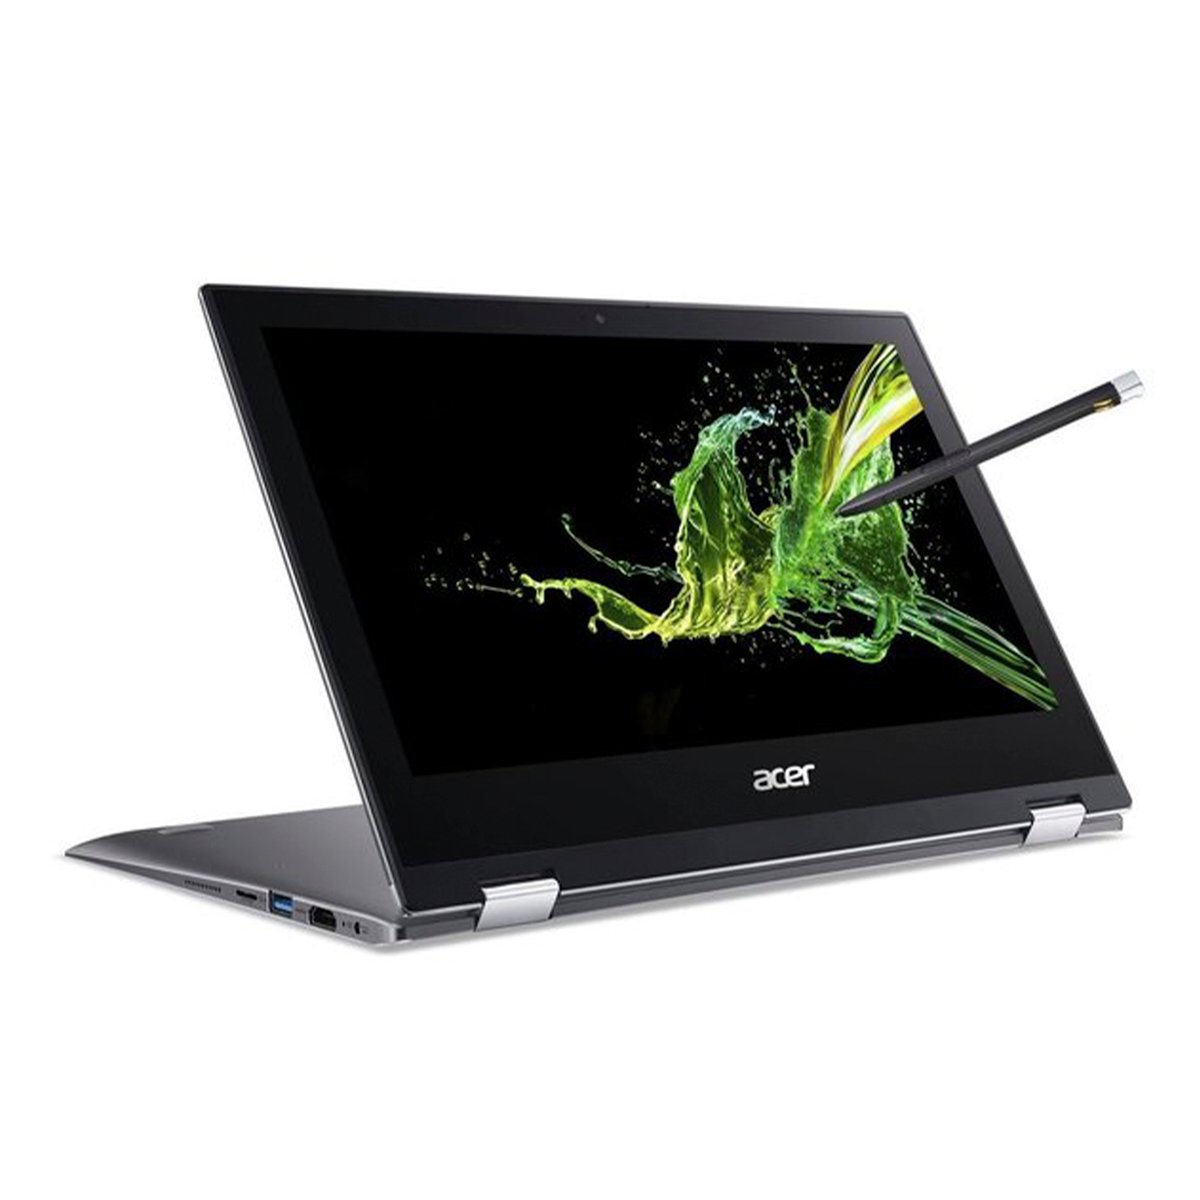 Acer Spin 1 SP111-34N-C251 Laptop,Intel Celeron N4000,4GB RAM,12GB emmc,11.6inch FHD,Windows10,Grey